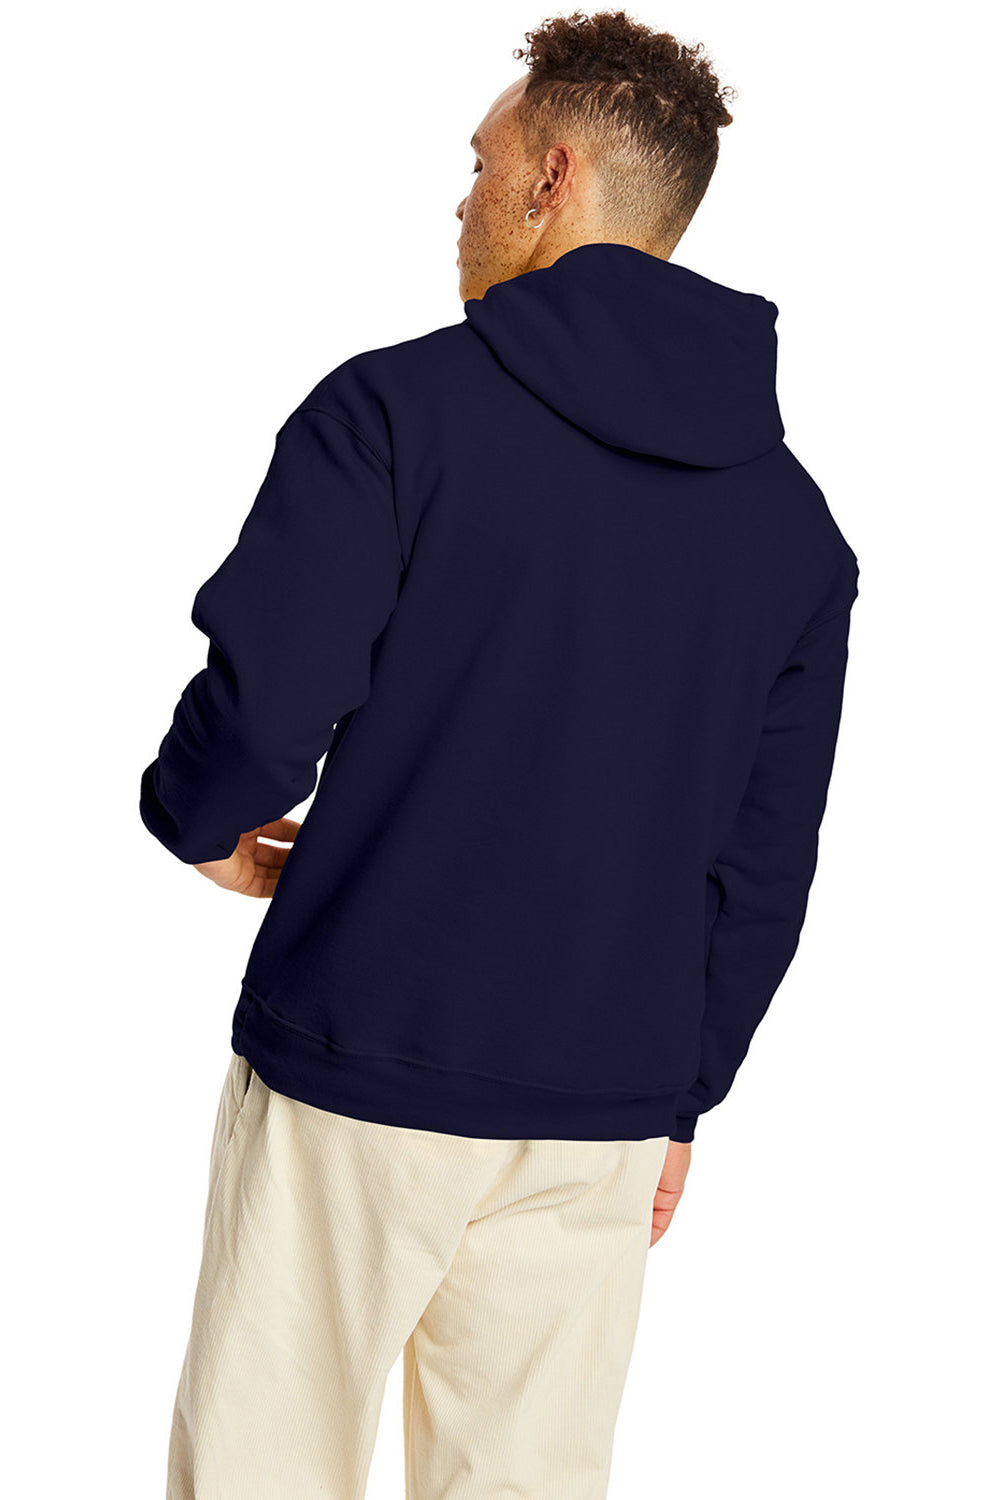 Hanes P170 Mens EcoSmart Print Pro XP Hooded Sweatshirt Hoodie Athletic Navy Blue Back